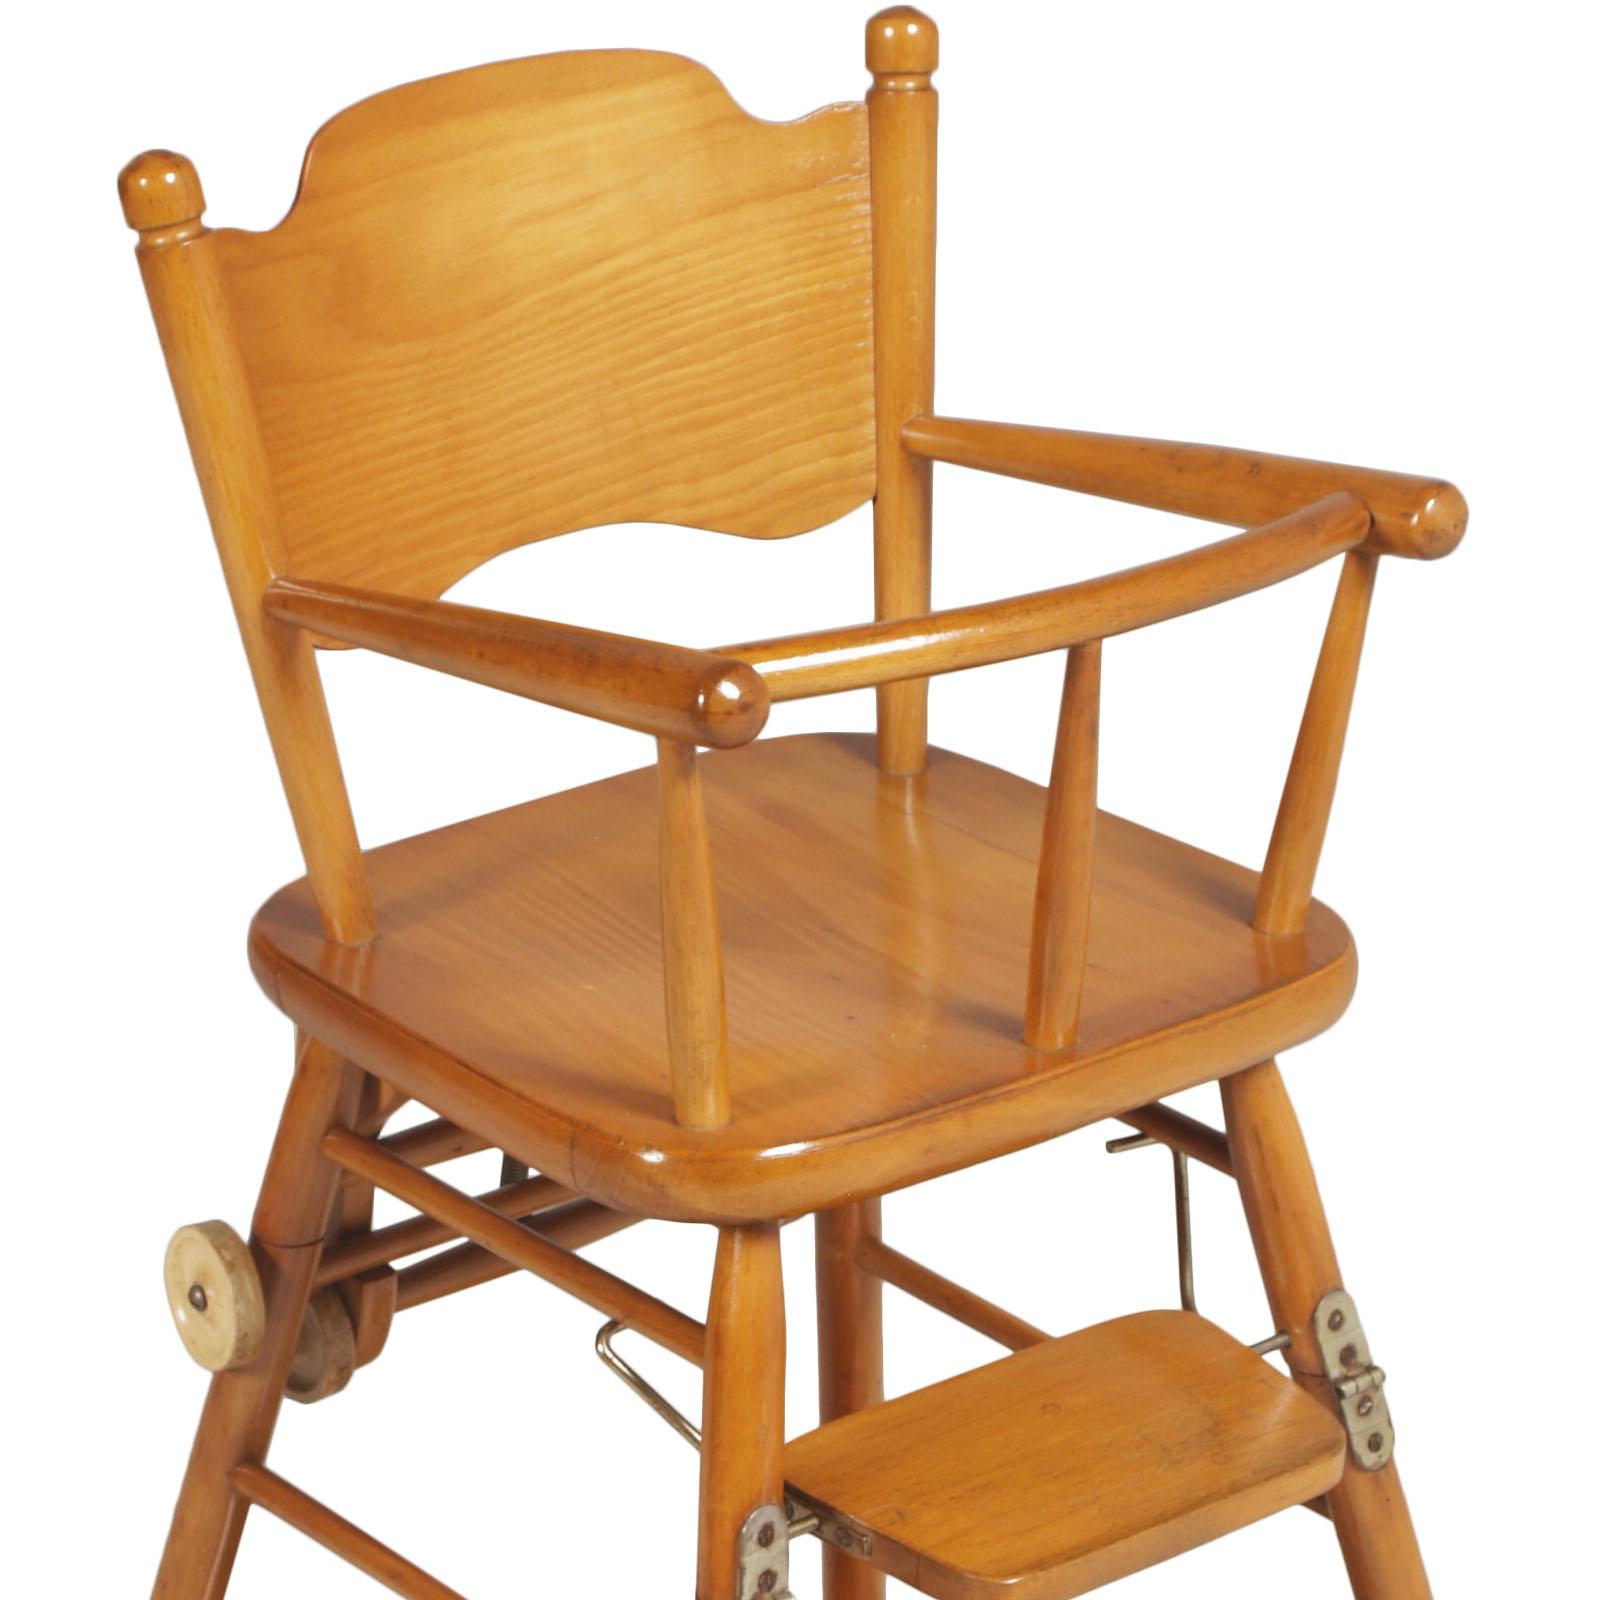 Chaise d'enfant italienne du milieu du siècle dernier, vers les années 1950, en bois de hêtre poli à la cire. Excellentes conditions.

Mesures : Chaise H 95\60, L 50, P 50
Table H 40, L 80, P 50.

      